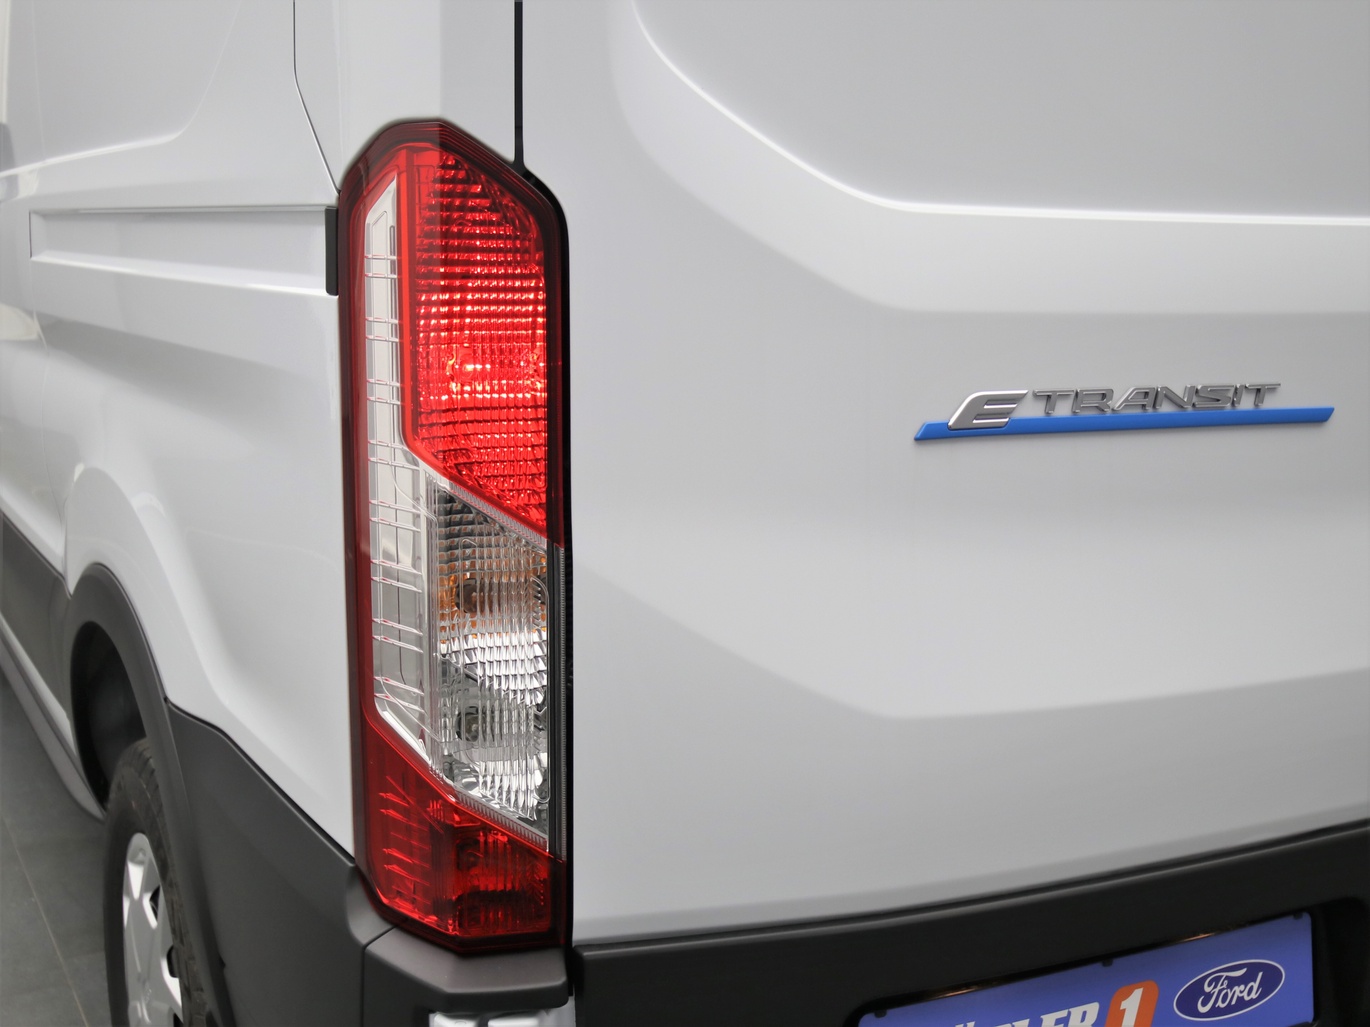  Ford E-Transit Kasten 350 L2 Trend Tech18 / Pro in Weiss 